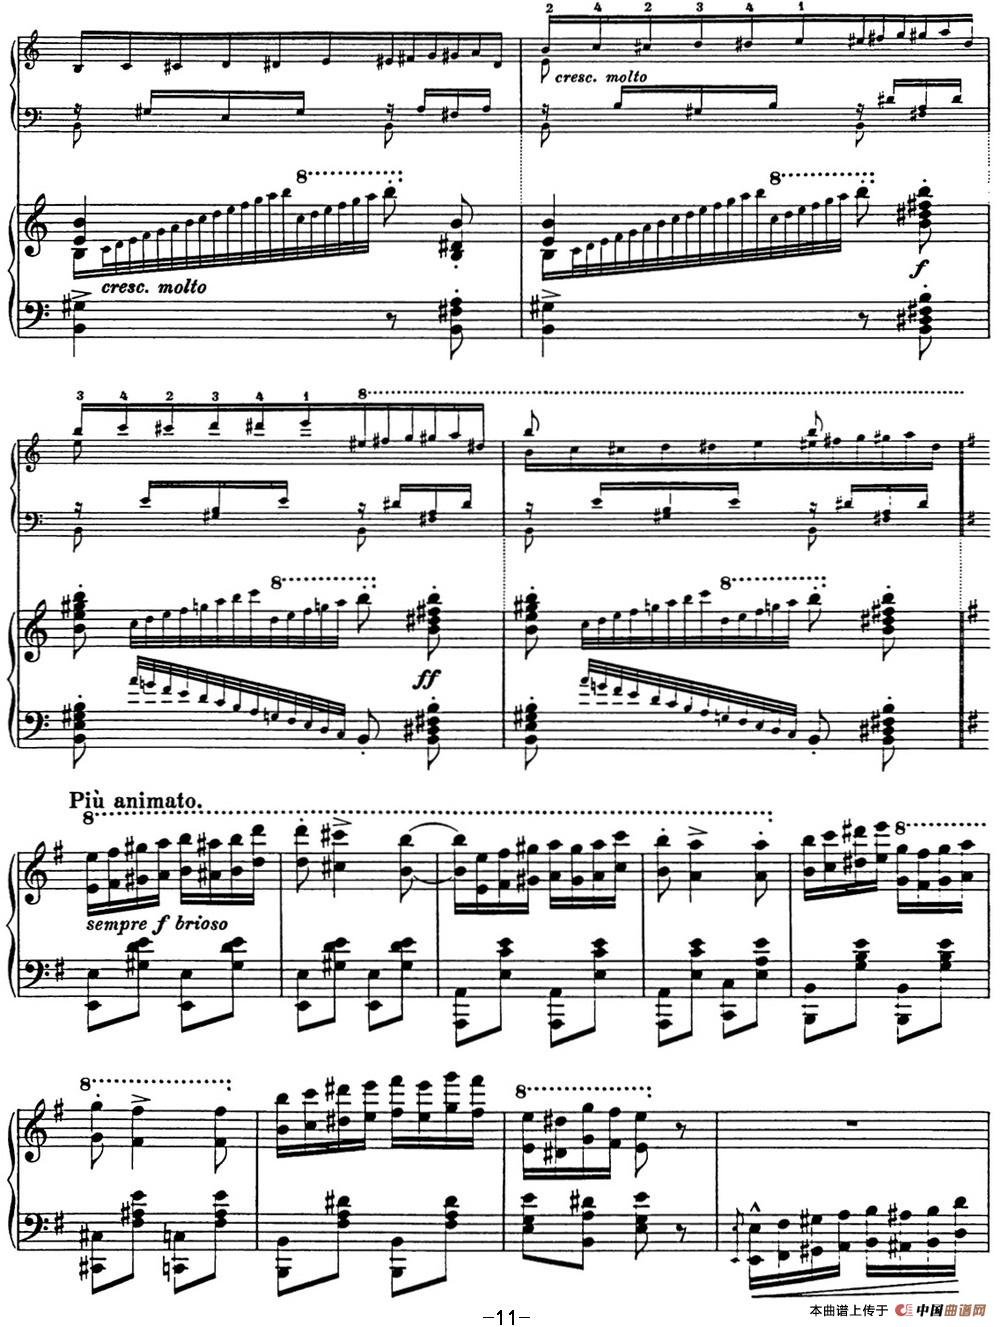 《李斯特 匈牙利狂想曲 Hungarian Rhapsodies S.244 No.10》钢琴曲谱图分享